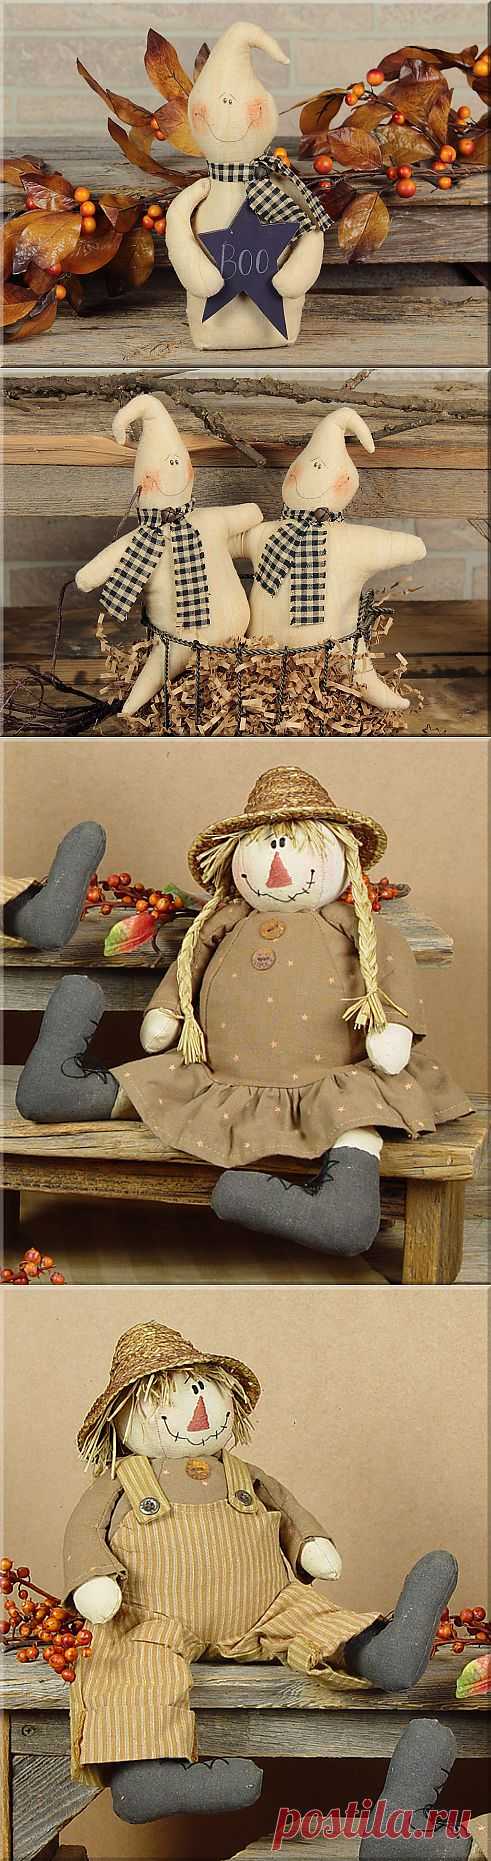 Примитивный домашний декор и подарки (куклы). Дизайнер Lisa Liffick.